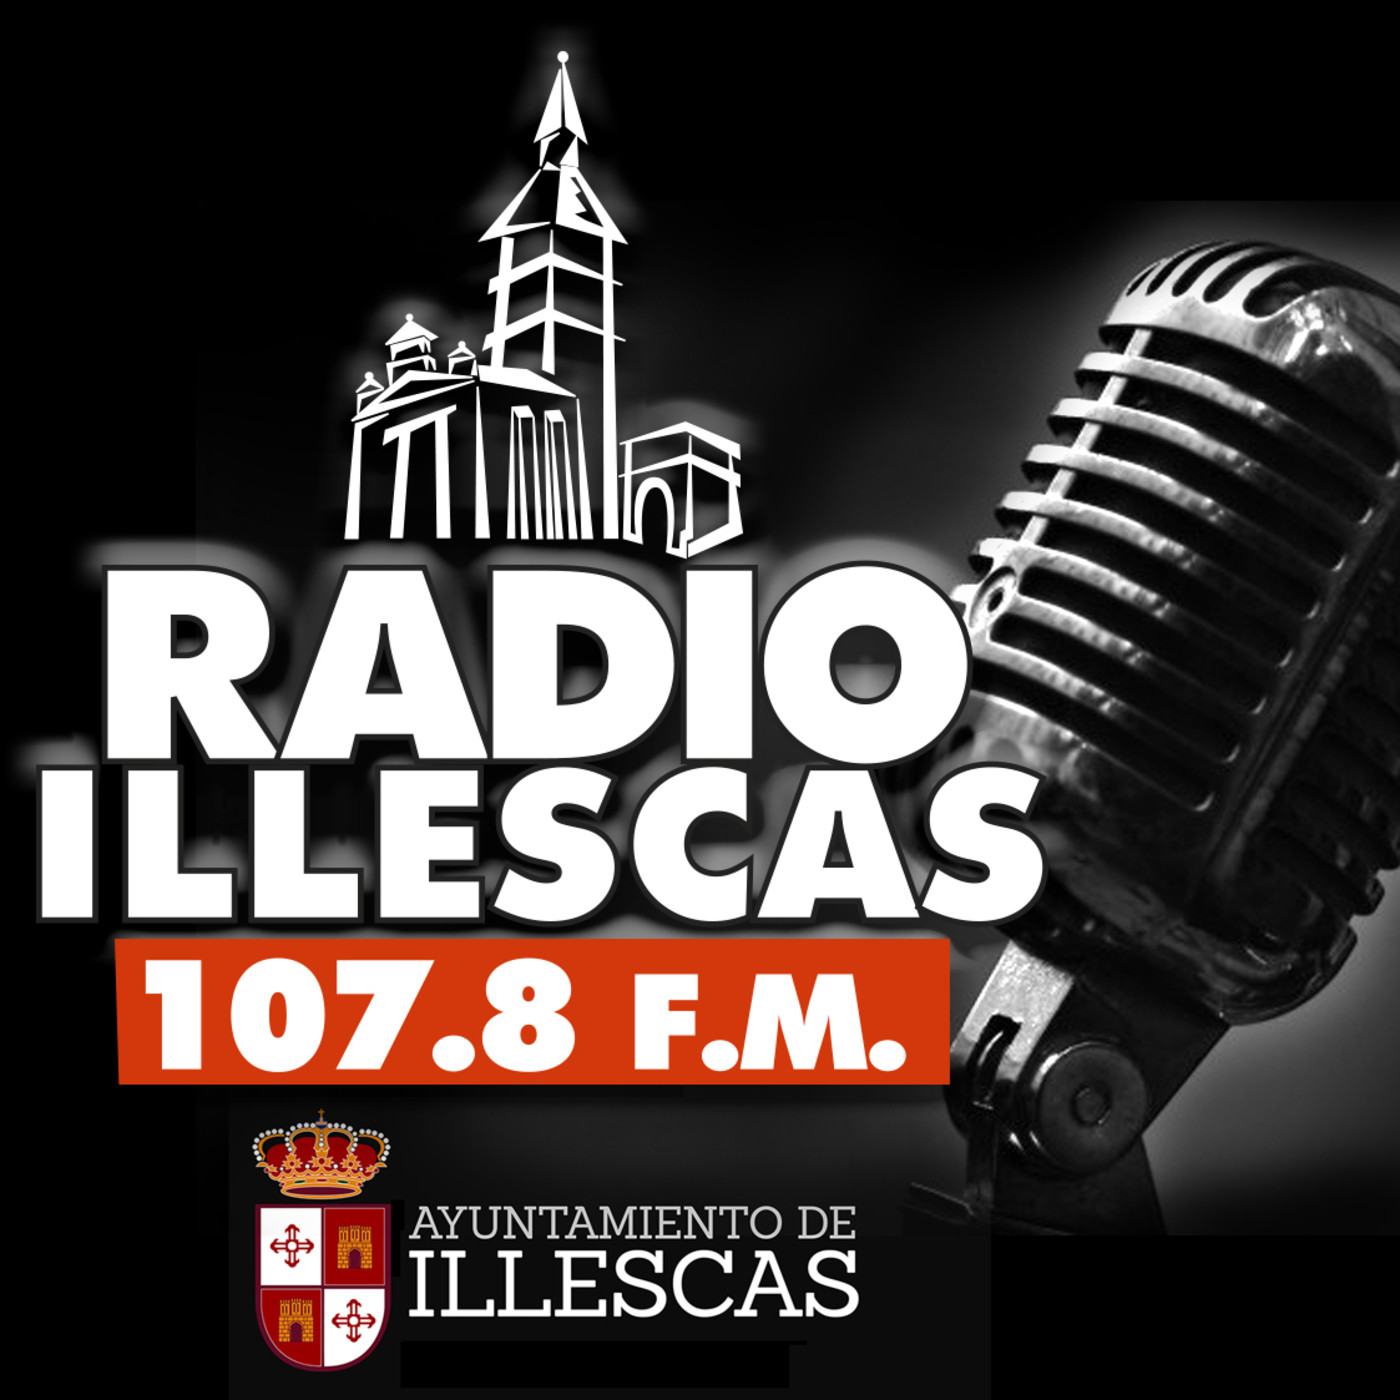 RADIO ILLESCAS: INFORMATIVOS Y ENTREVISTAS